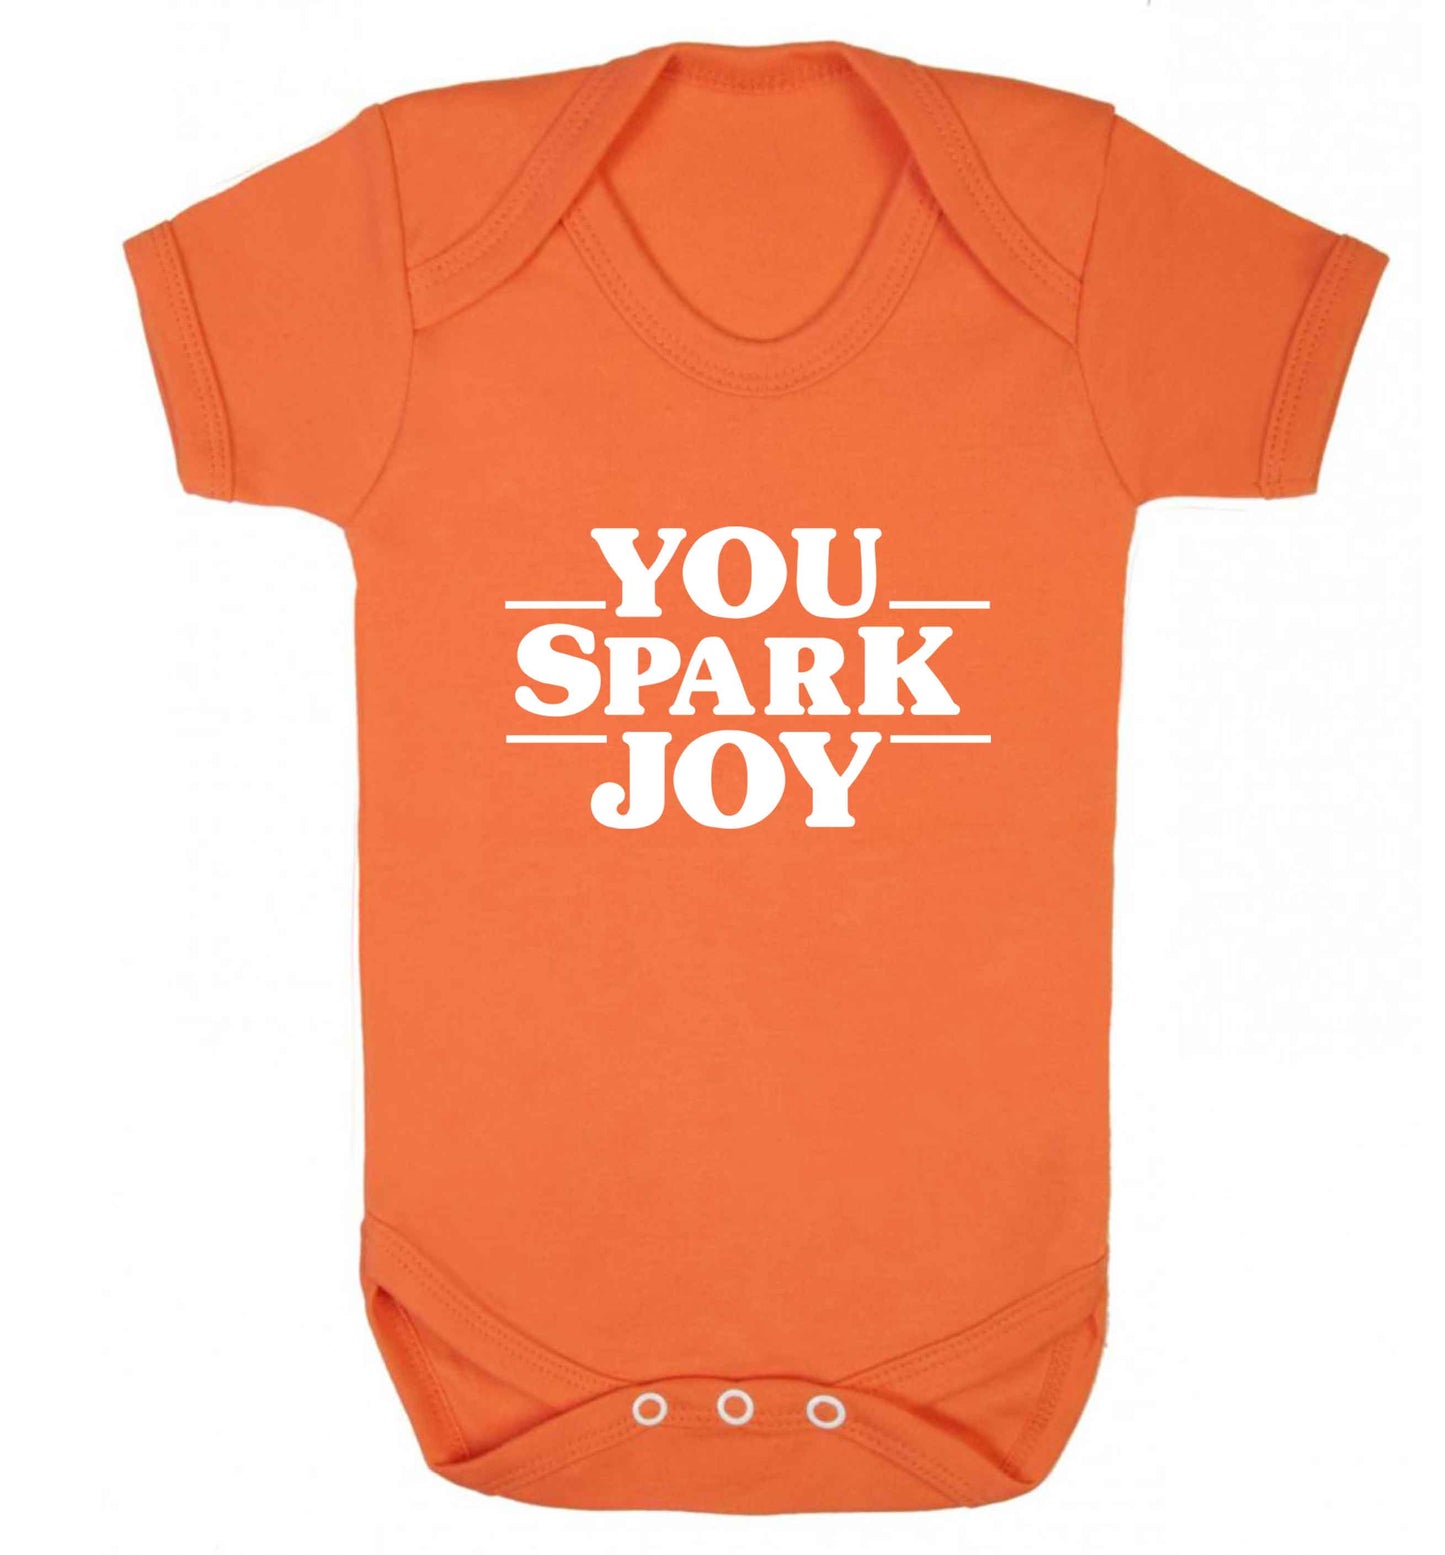 You spark joy baby vest orange 18-24 months